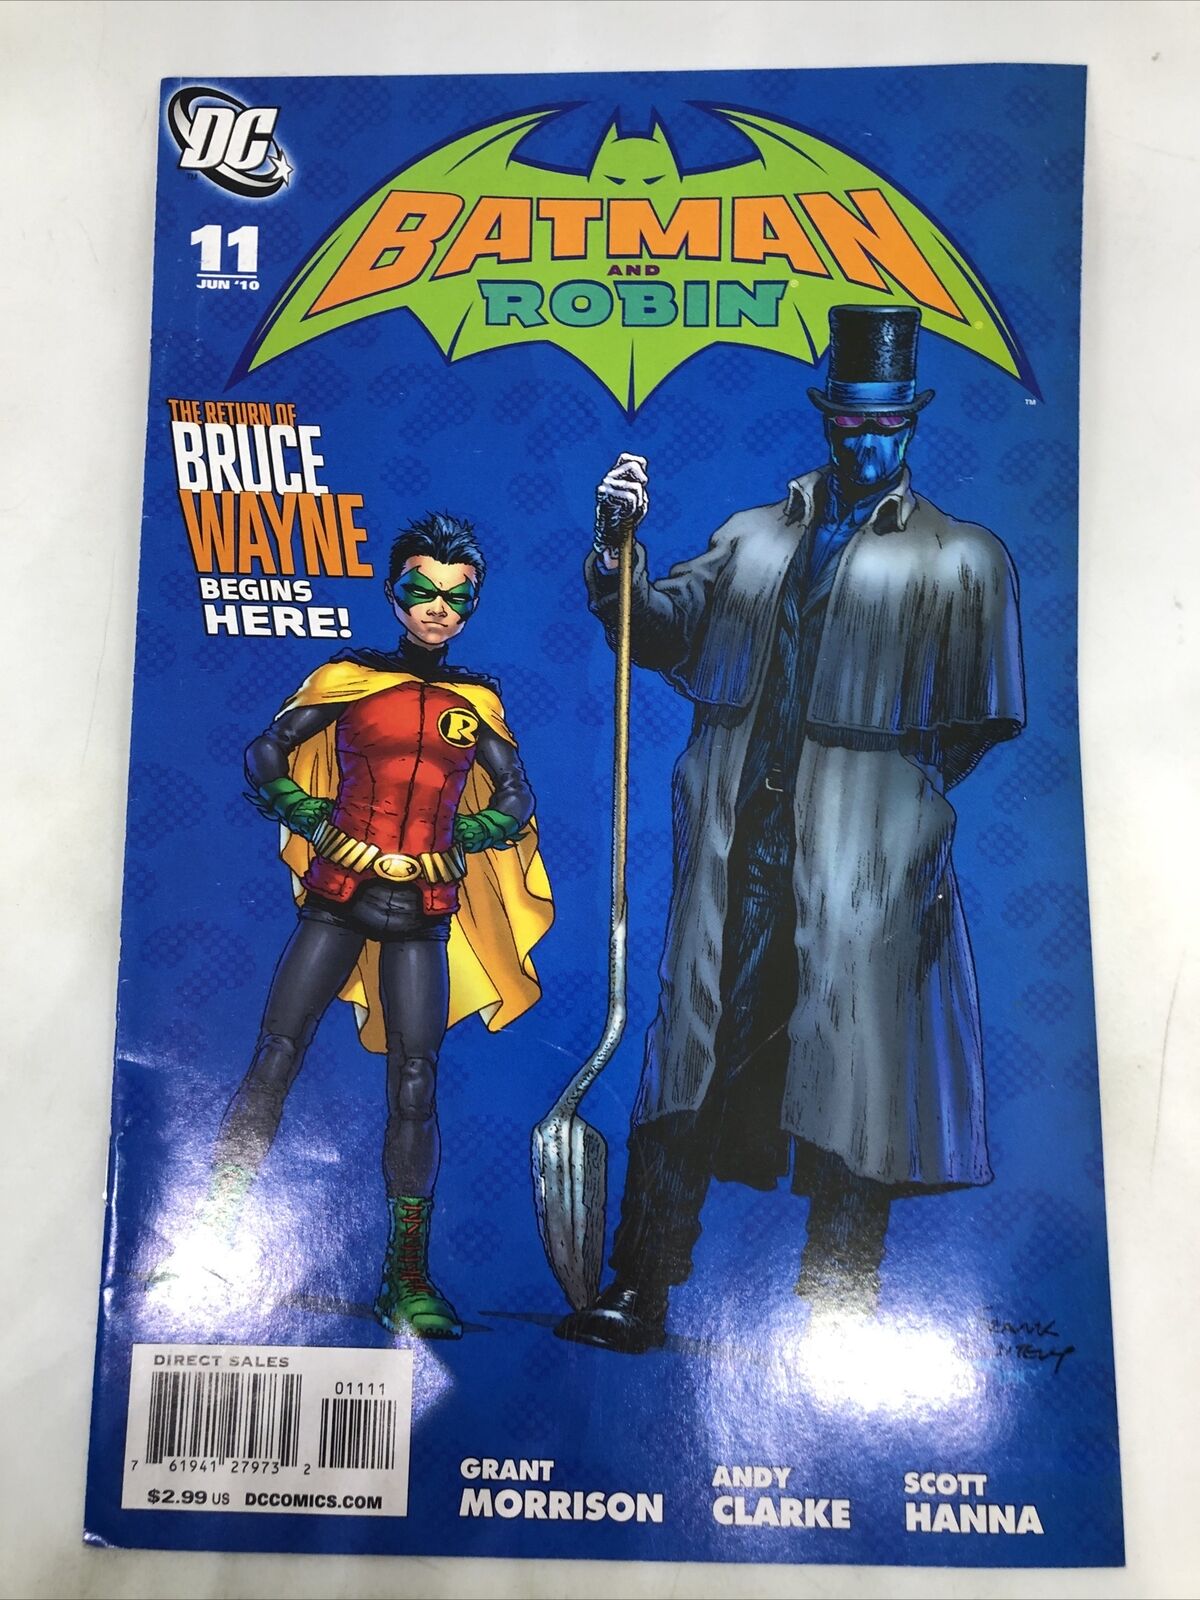 2010 DC Comics Batman VS Robin #11 July 2010